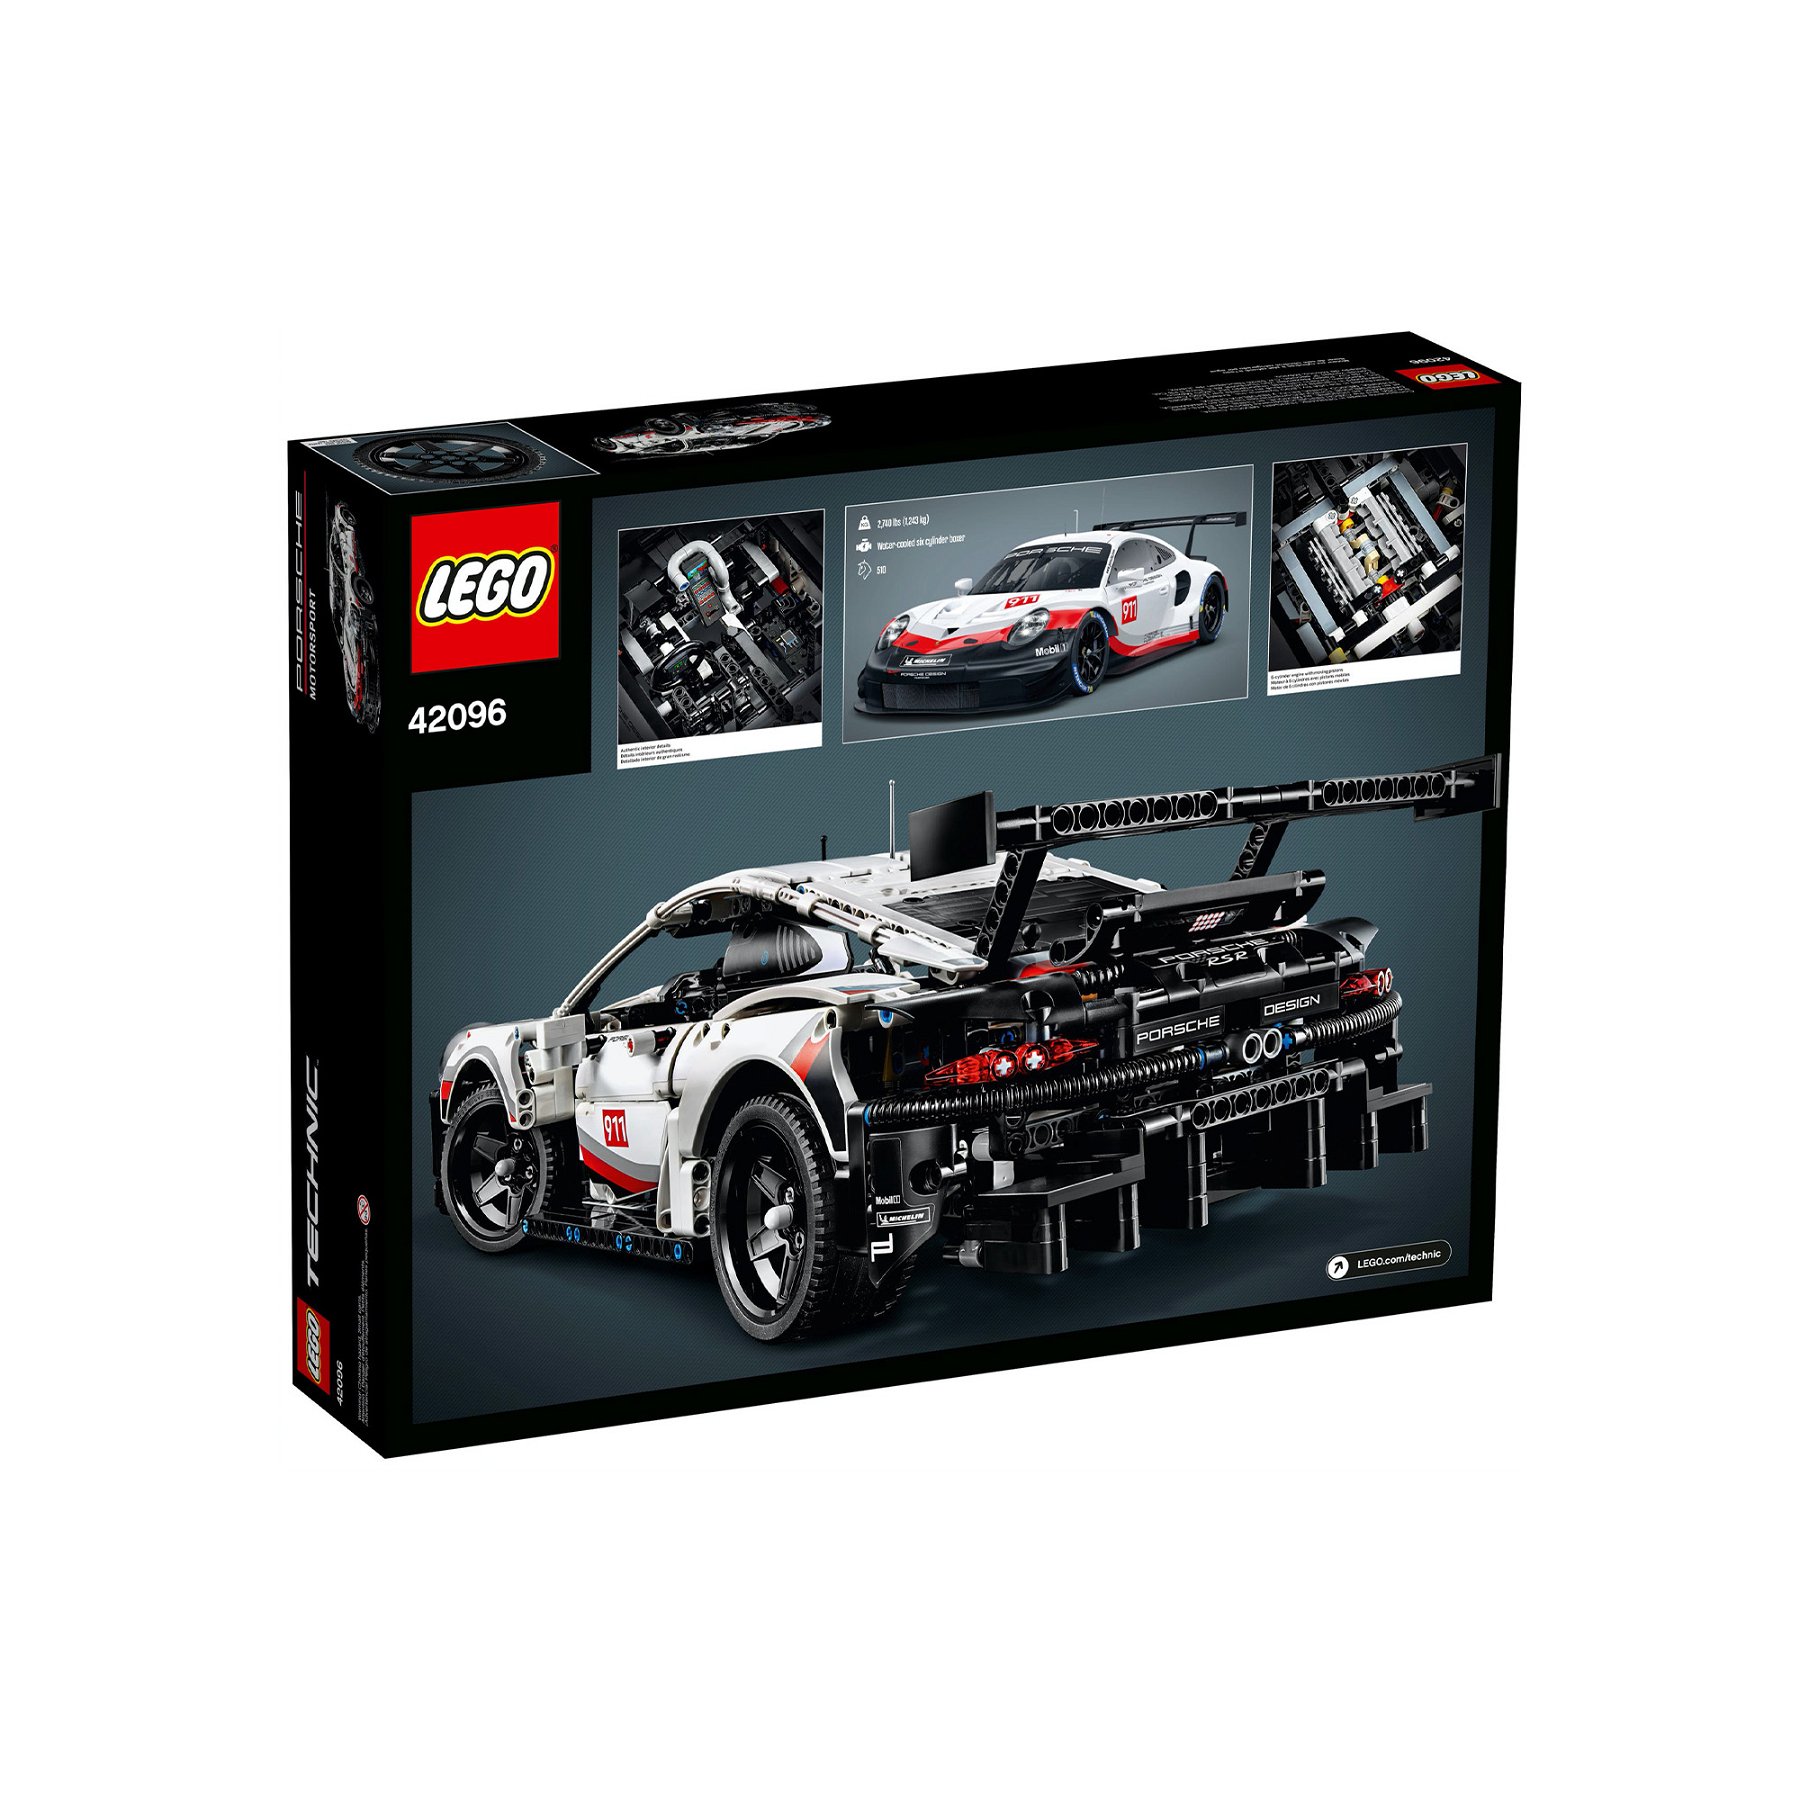 https://cdn.elferspot.com/wp-content/uploads/2021/03/LEGO_Porsche911RSR_box2.jpg?class=xl